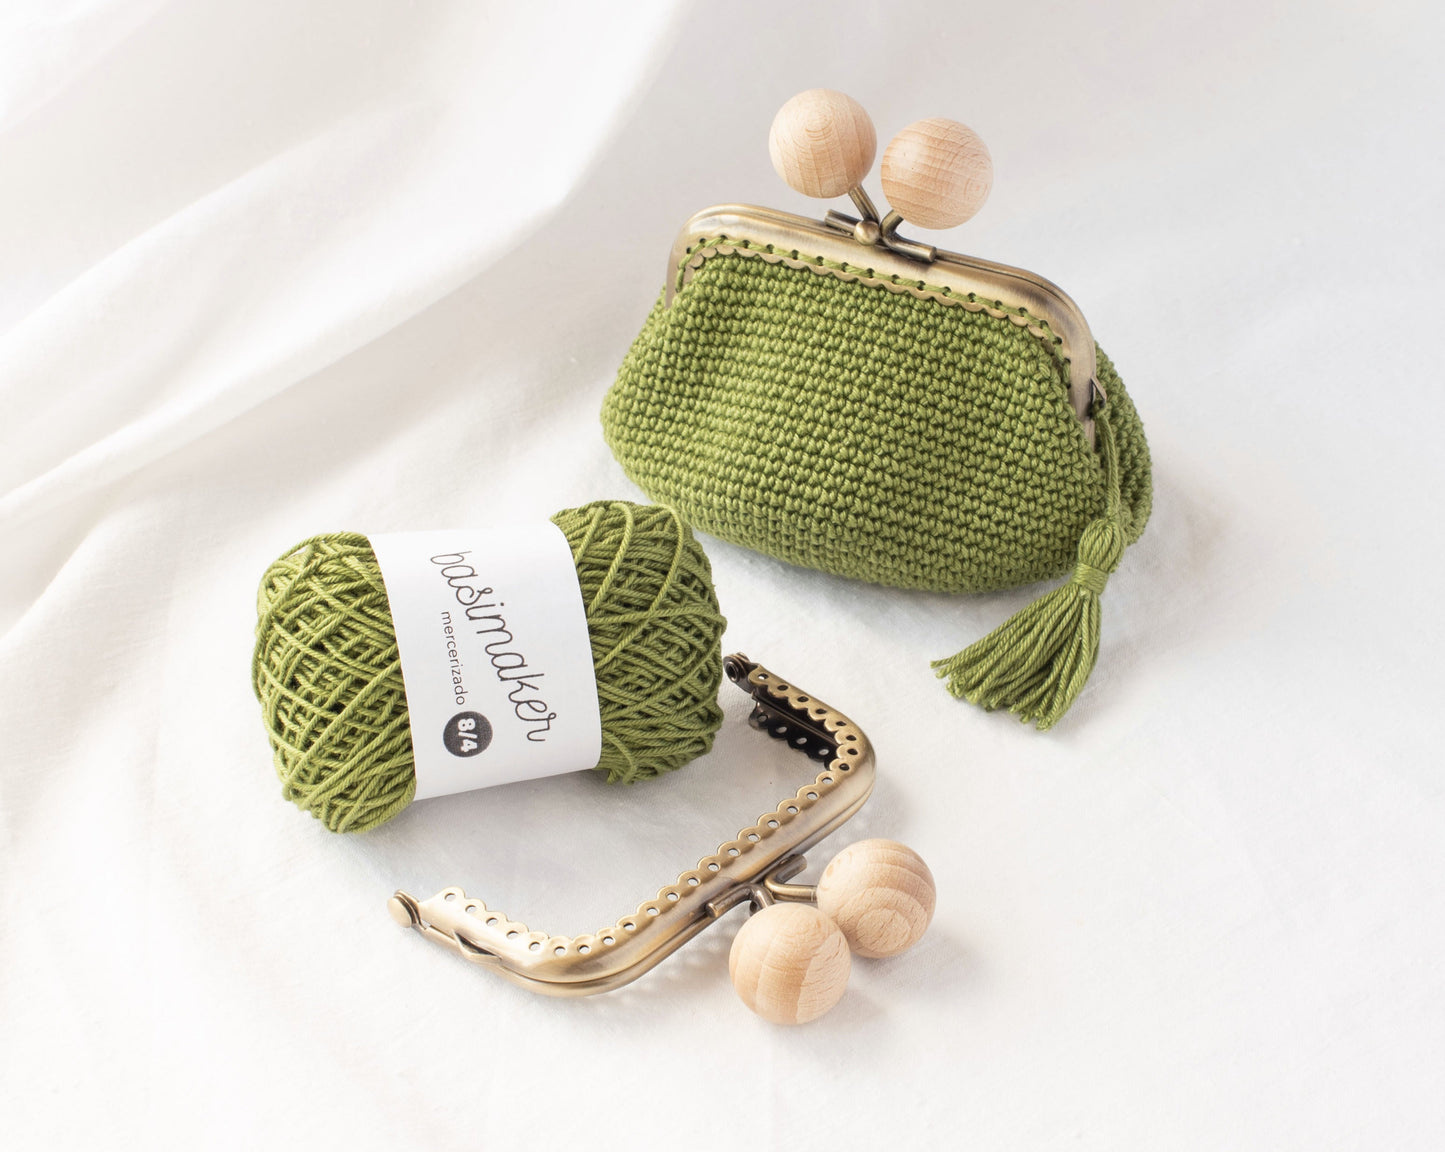 Kit de crochet para hacer el monedero BASIC con boquilla cuadrada de 8.5cm, nivel FÁCIL